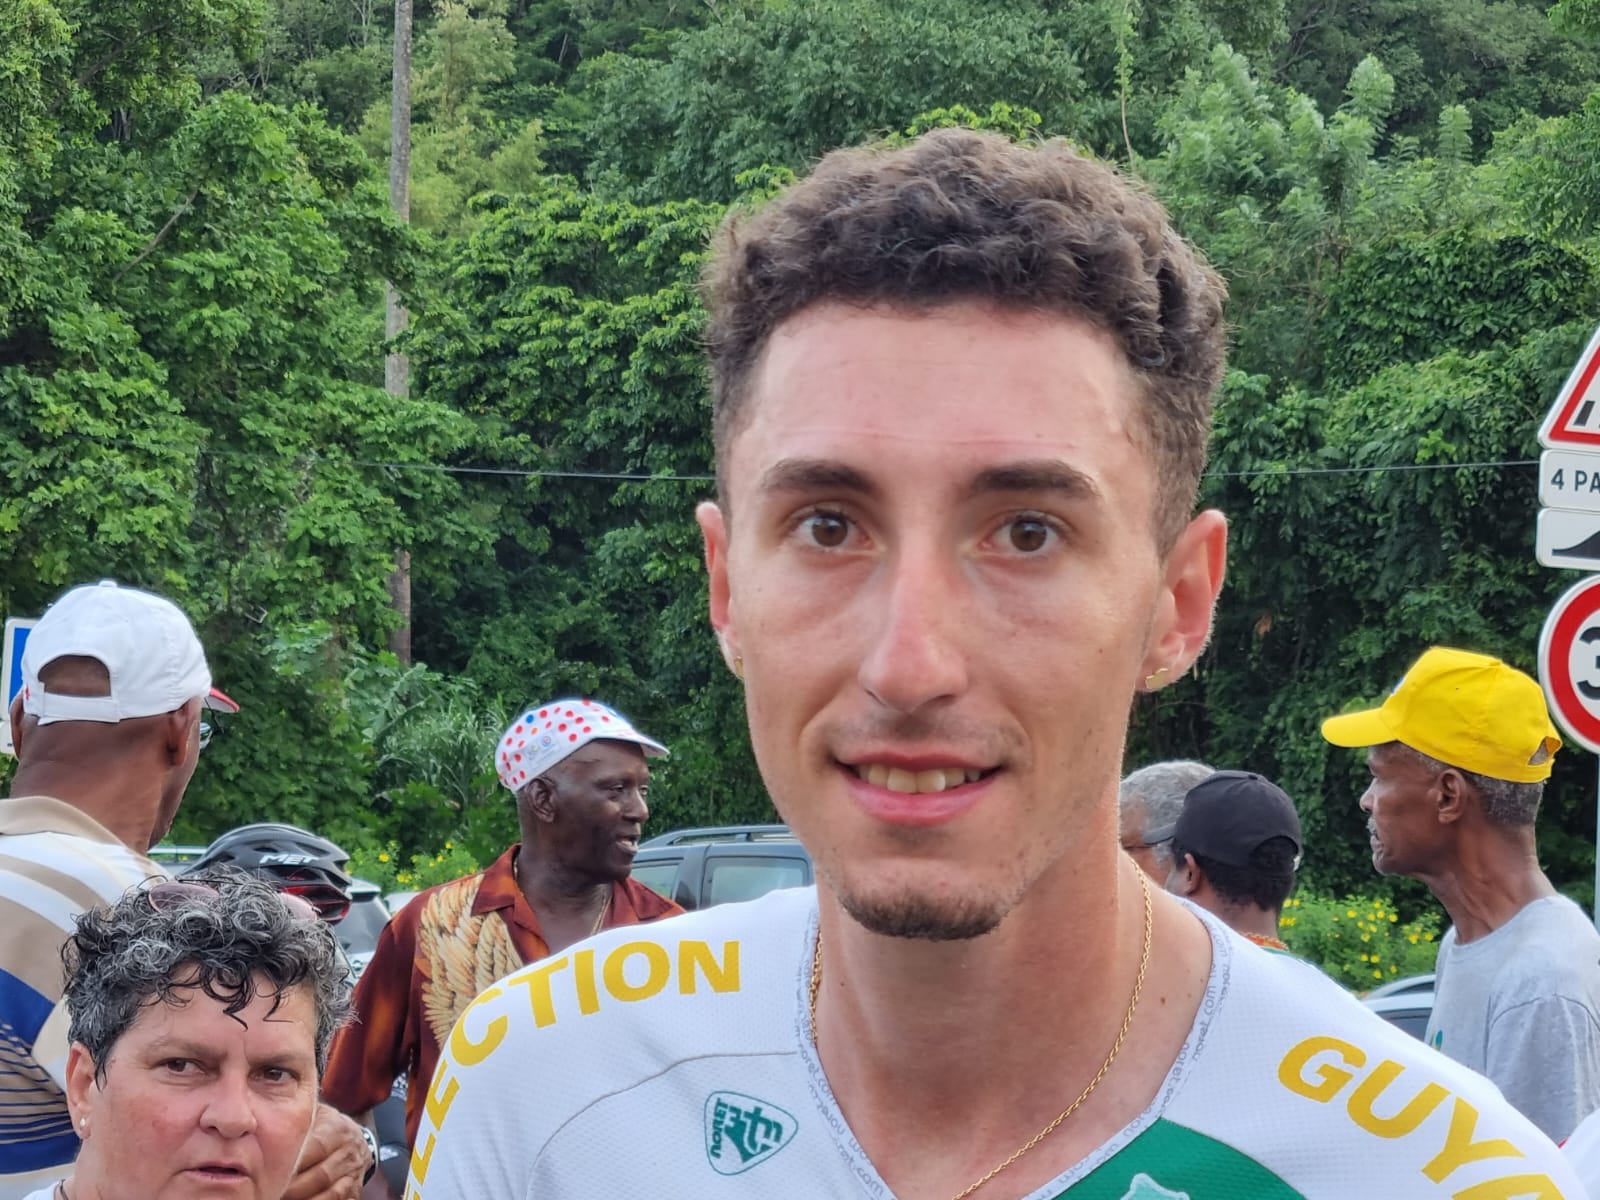     Cyclisme : Dilhan Will quitte la Guyane pour un club guadeloupéen

